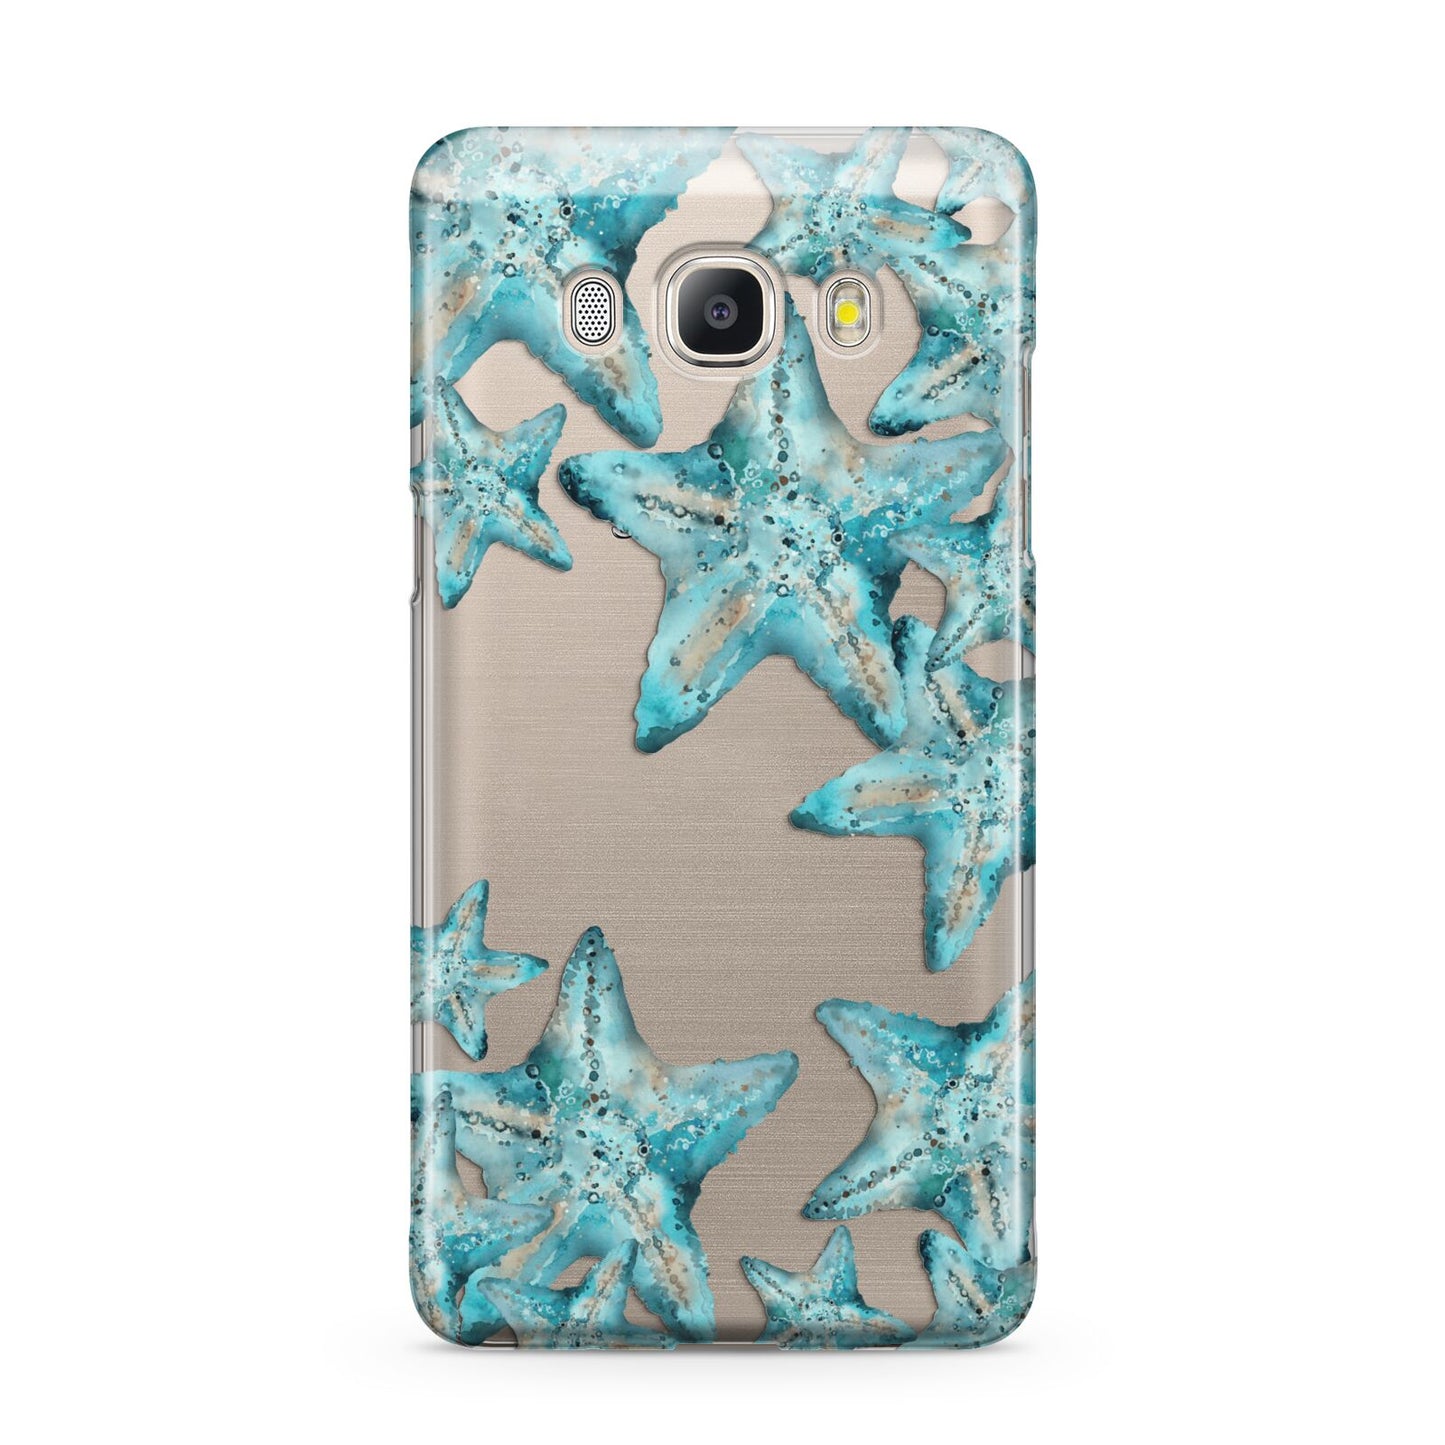 Starfish Samsung Galaxy J5 2016 Case